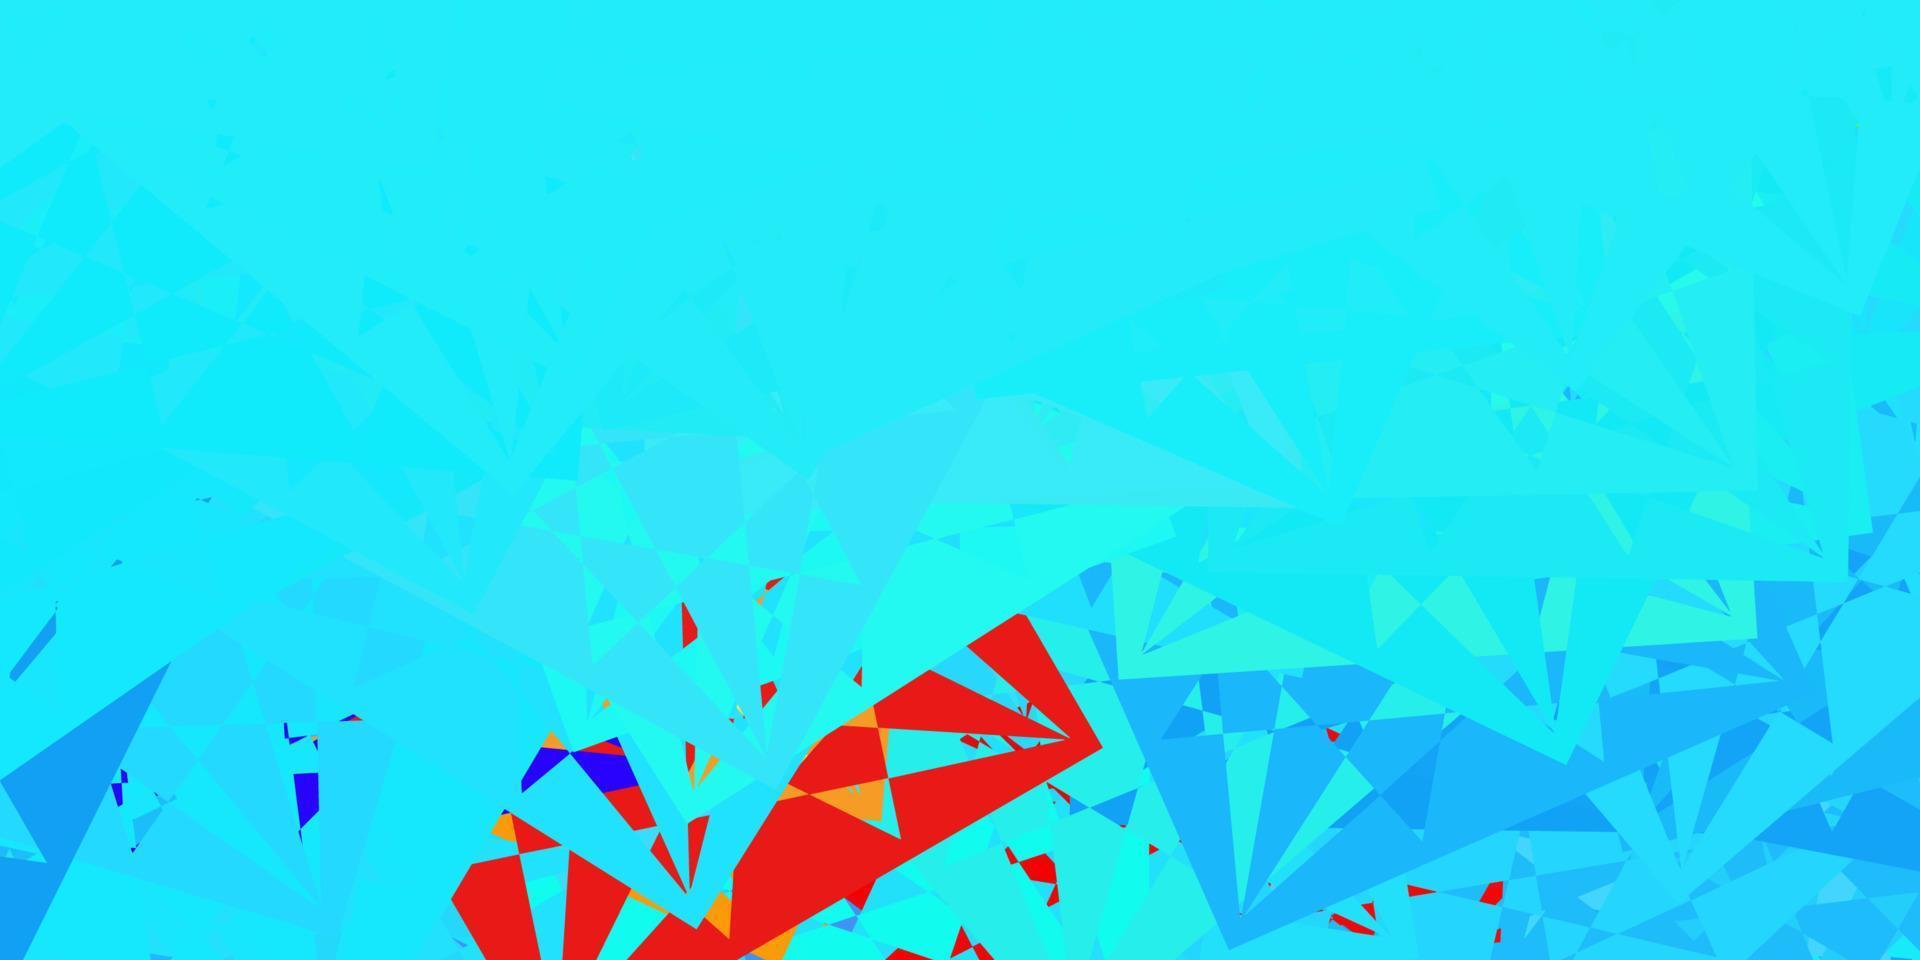 modello vettoriale azzurro, rosso con forme triangolari.